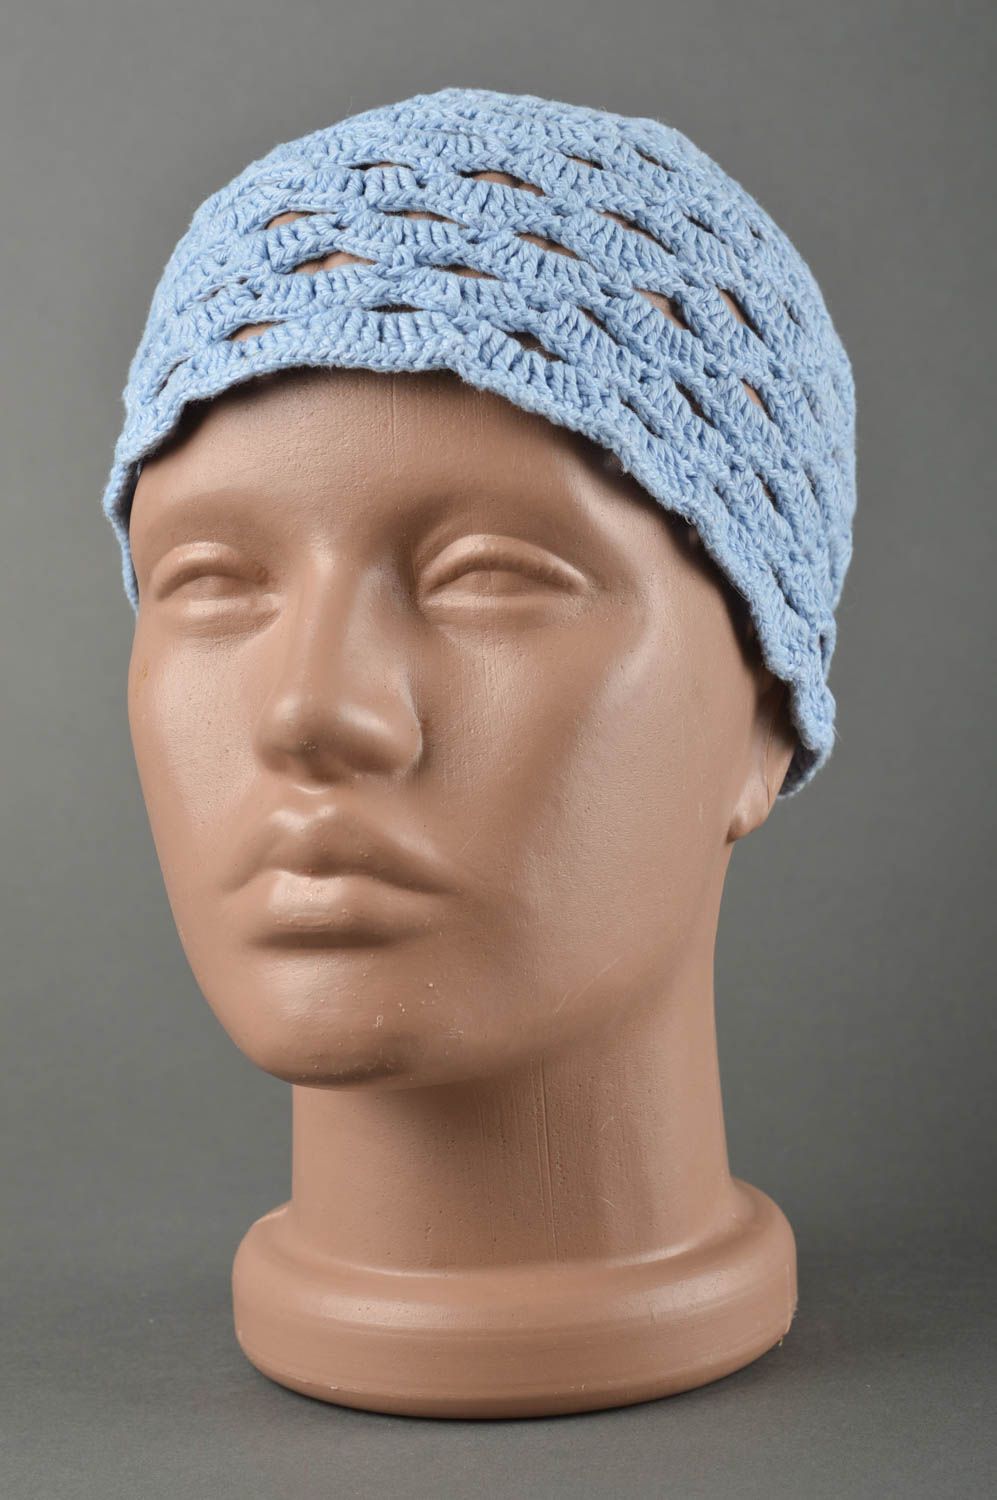 Blaue gehäkelte Kindermütze stilvolle handgemachte Mütze modisches Accessoire foto 1